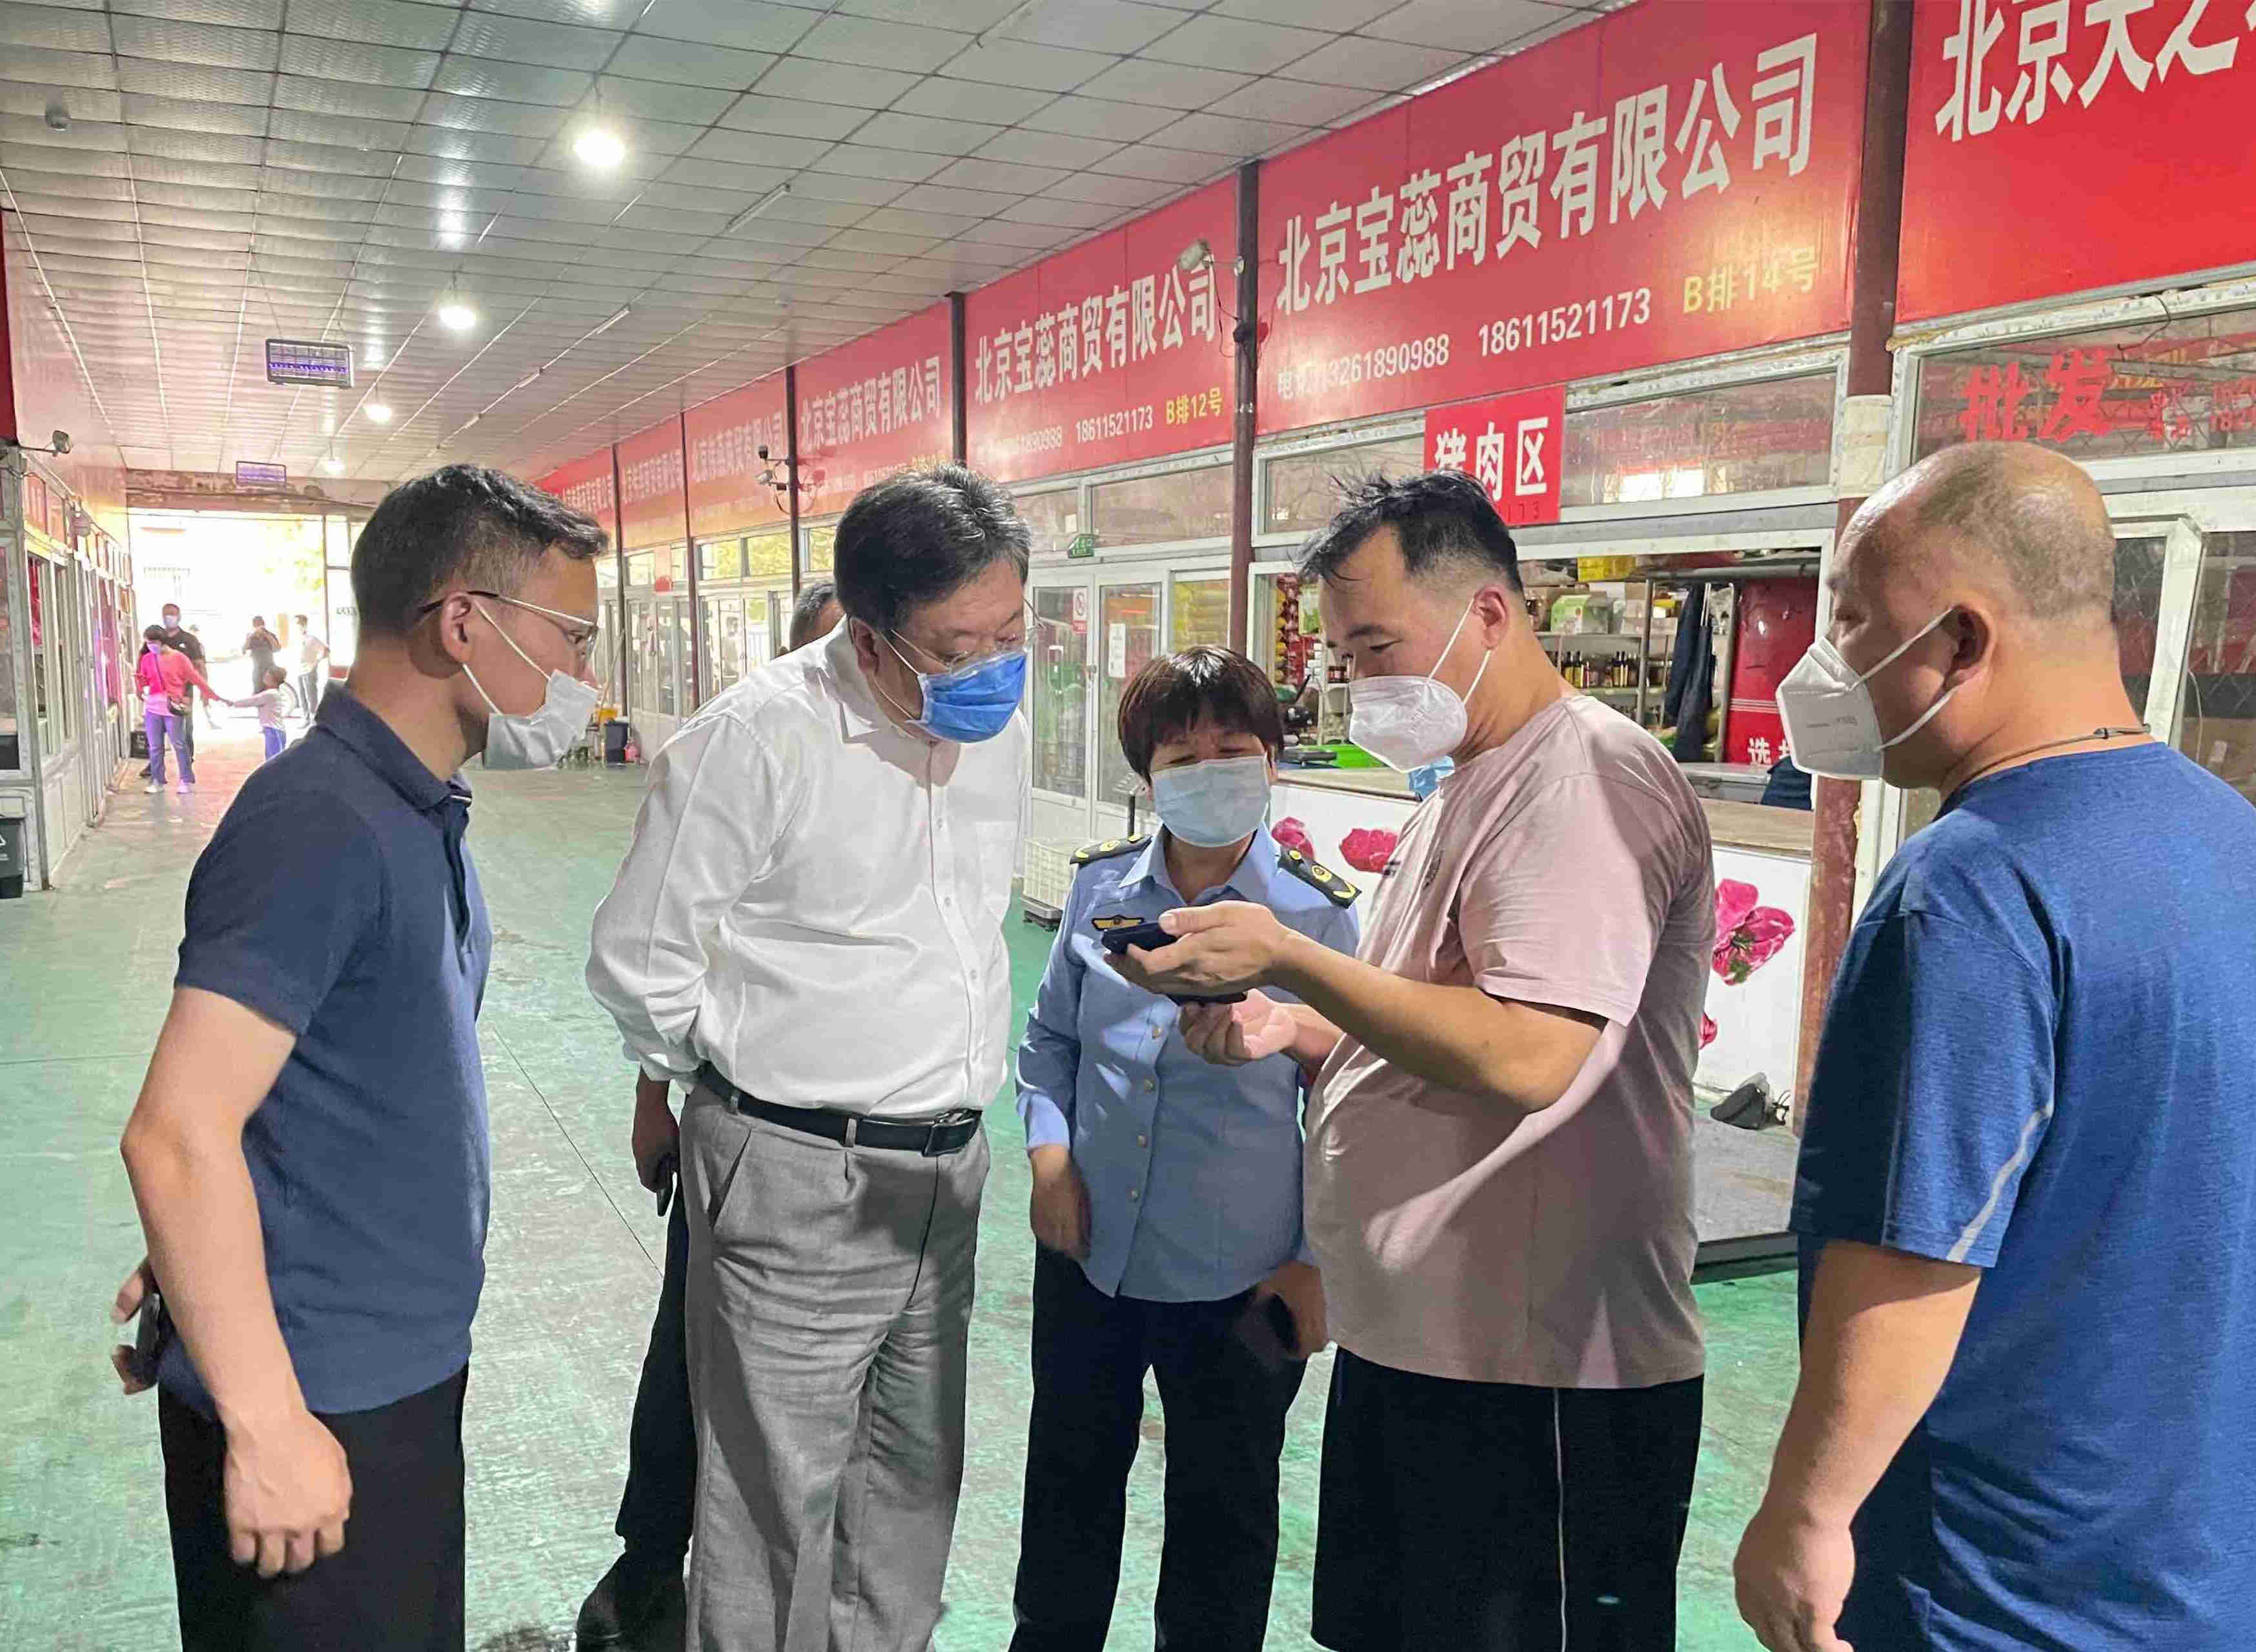 区人大常委会主任刘兵就市场疫情防控情况进行带队到太平庄市场、京南市场、龙盛市场检查